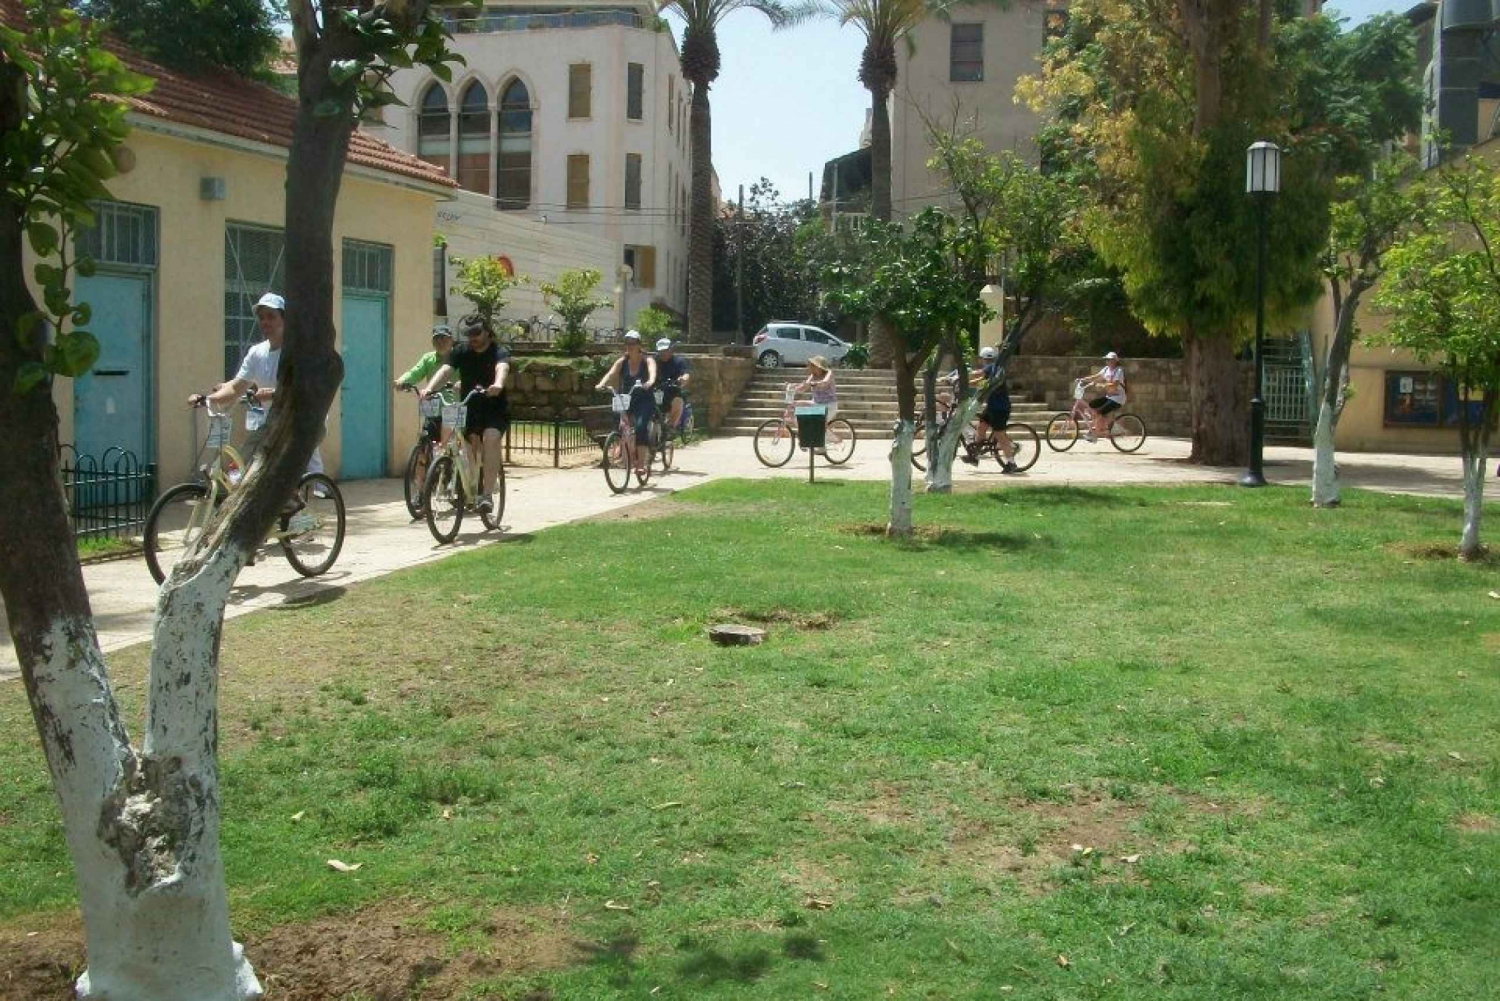 Tel Aviv 3-Hour Easy Bike Tour